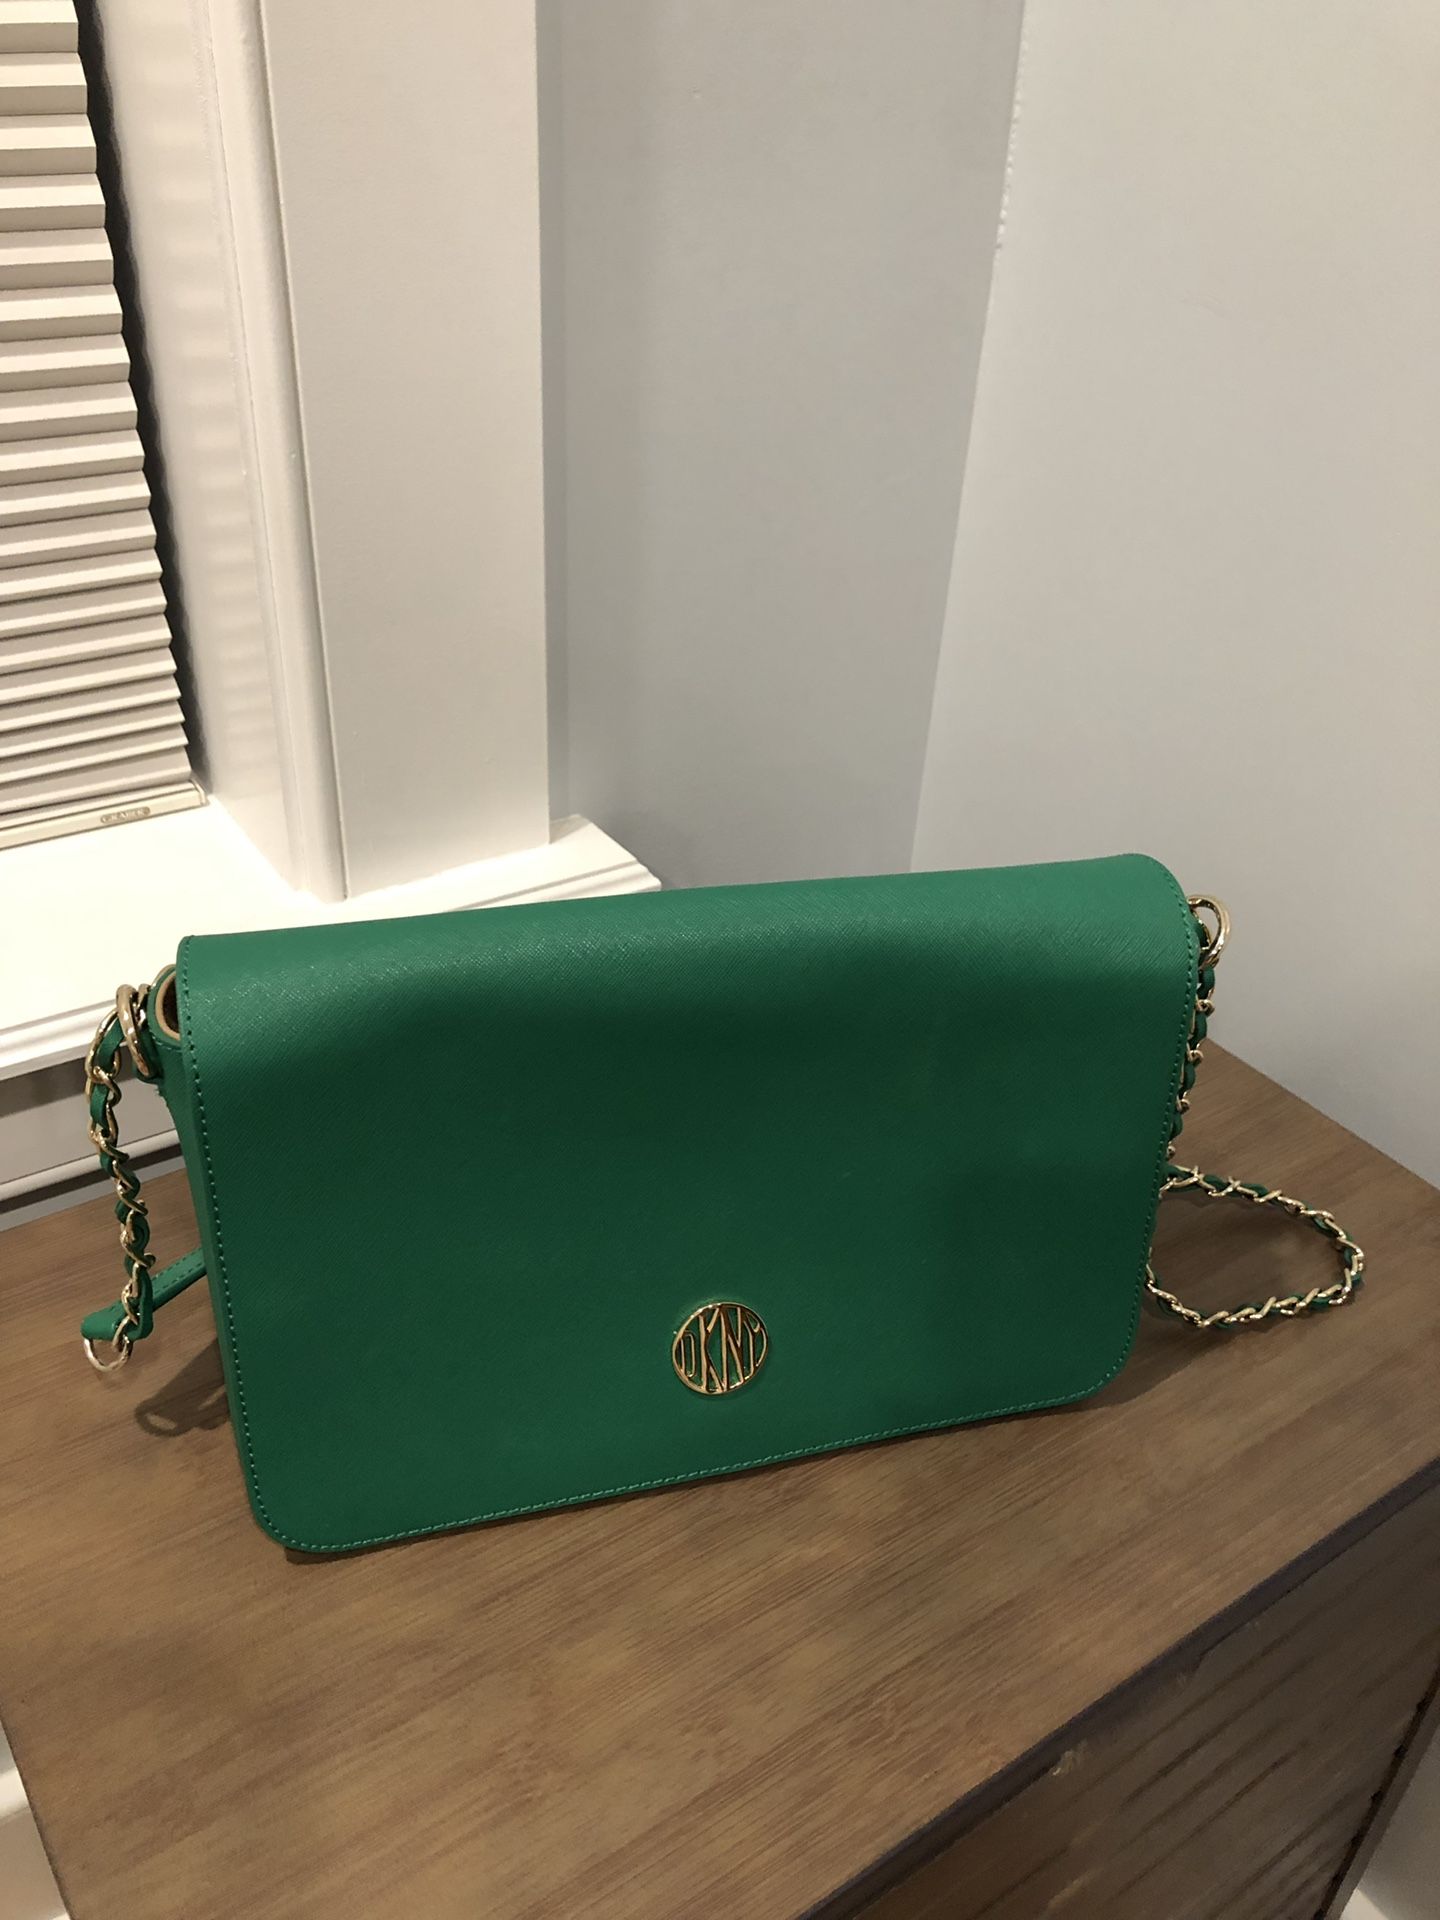 DKNY green purse